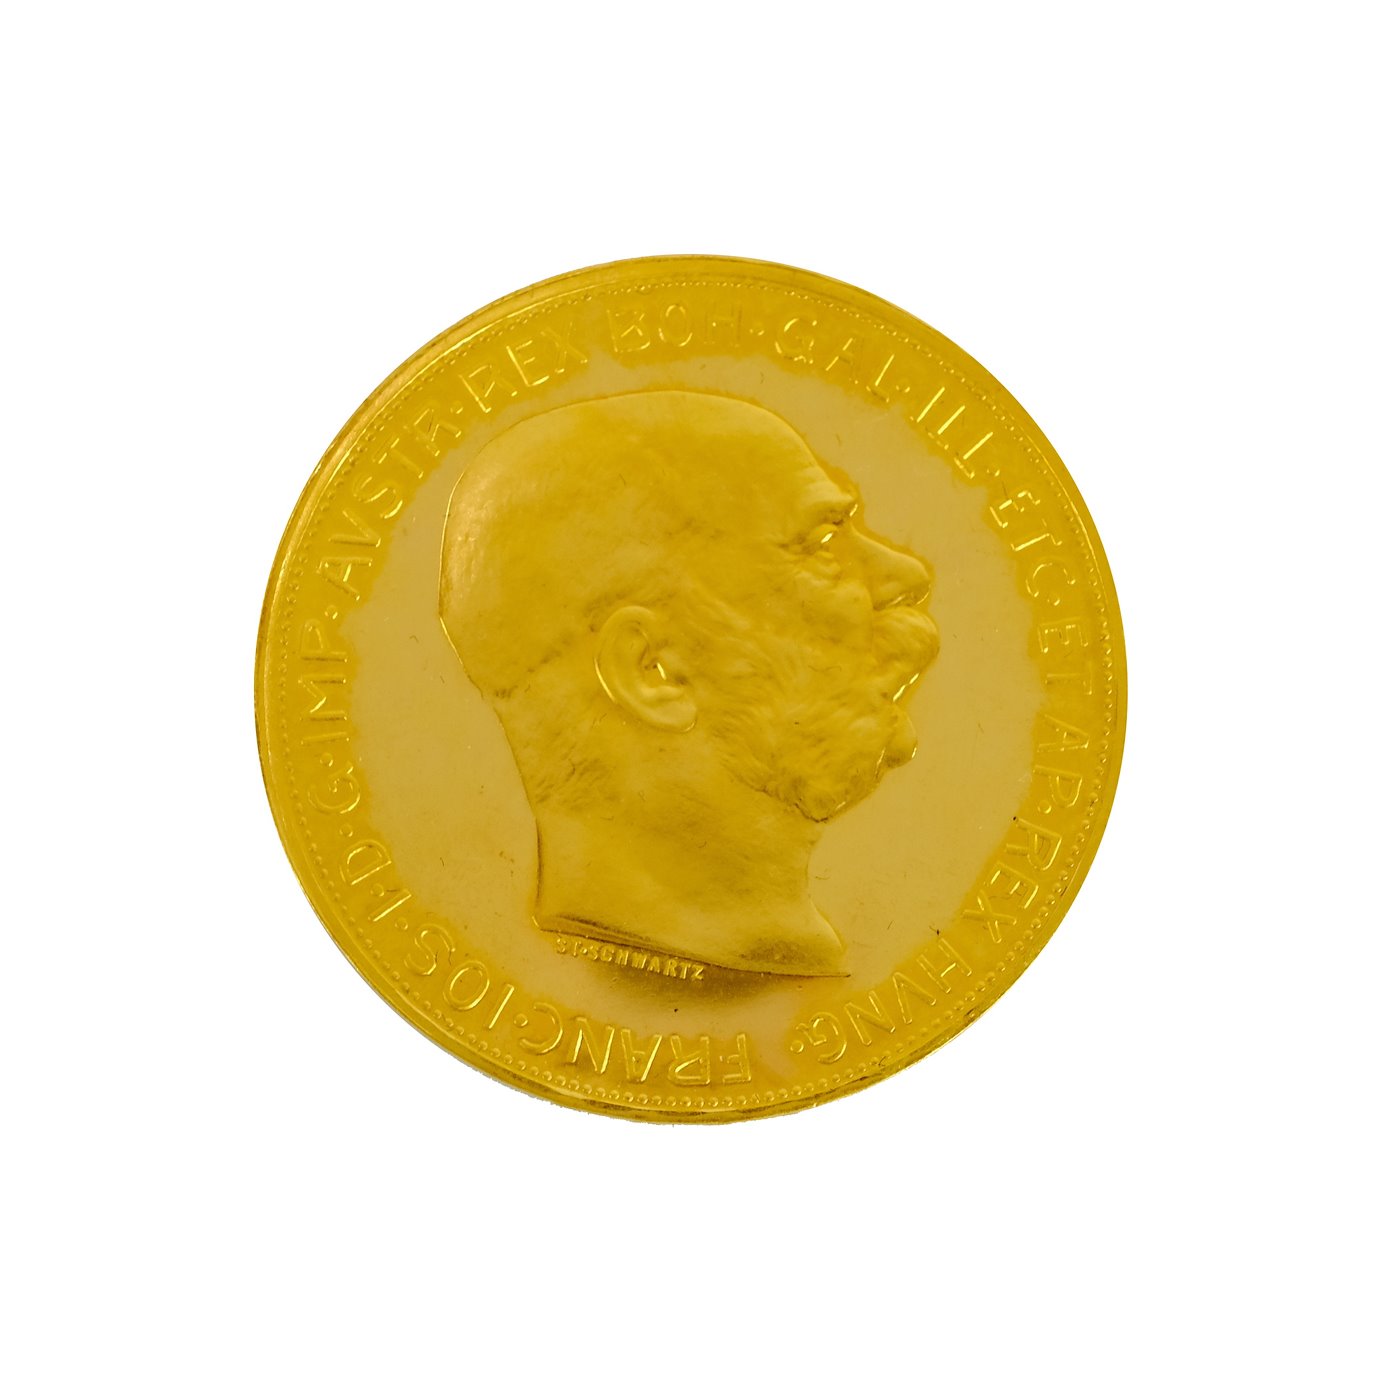 .. - Rakousko Uhersko zlatá 100 Koruna 1915 pokračující ražba, zlato 900/1000, hrubá hmotnost 33,875 g